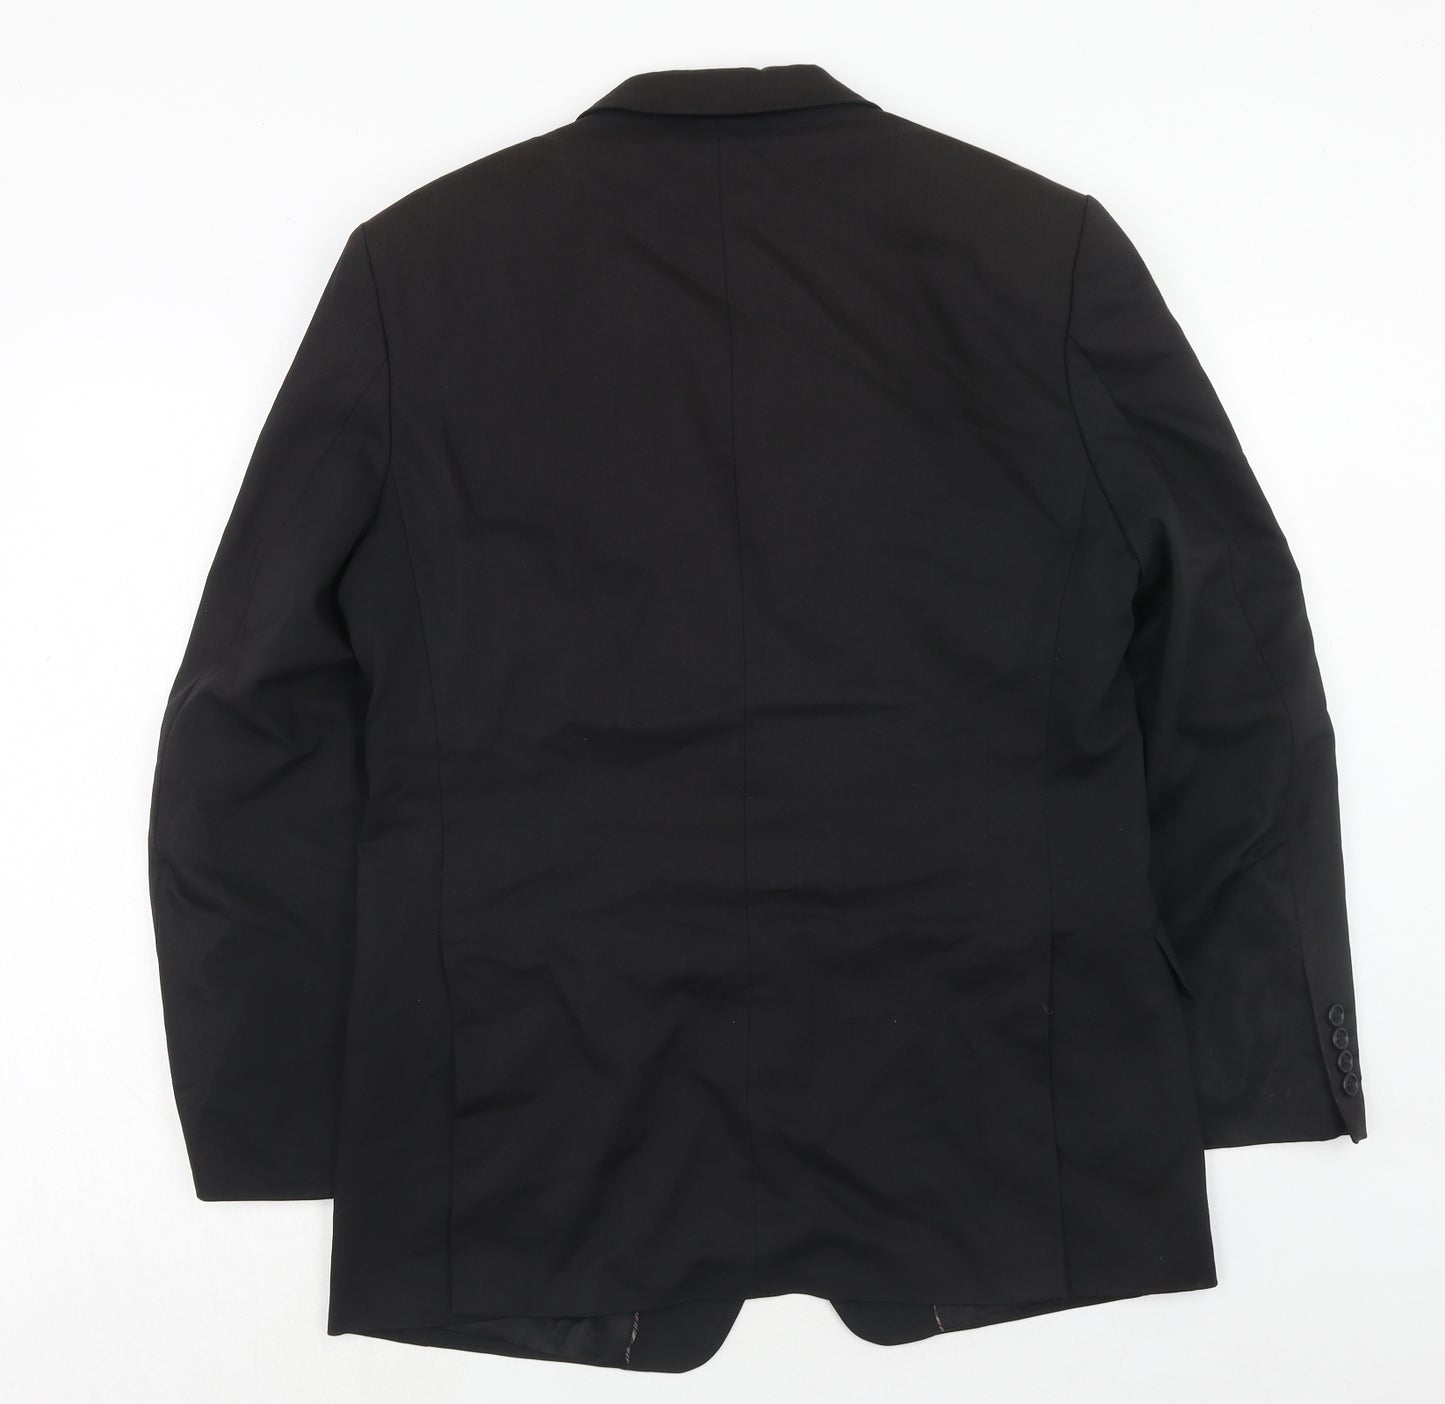 Autograph Mens Black Wool Jacket Suit Jacket Size 40 Regular